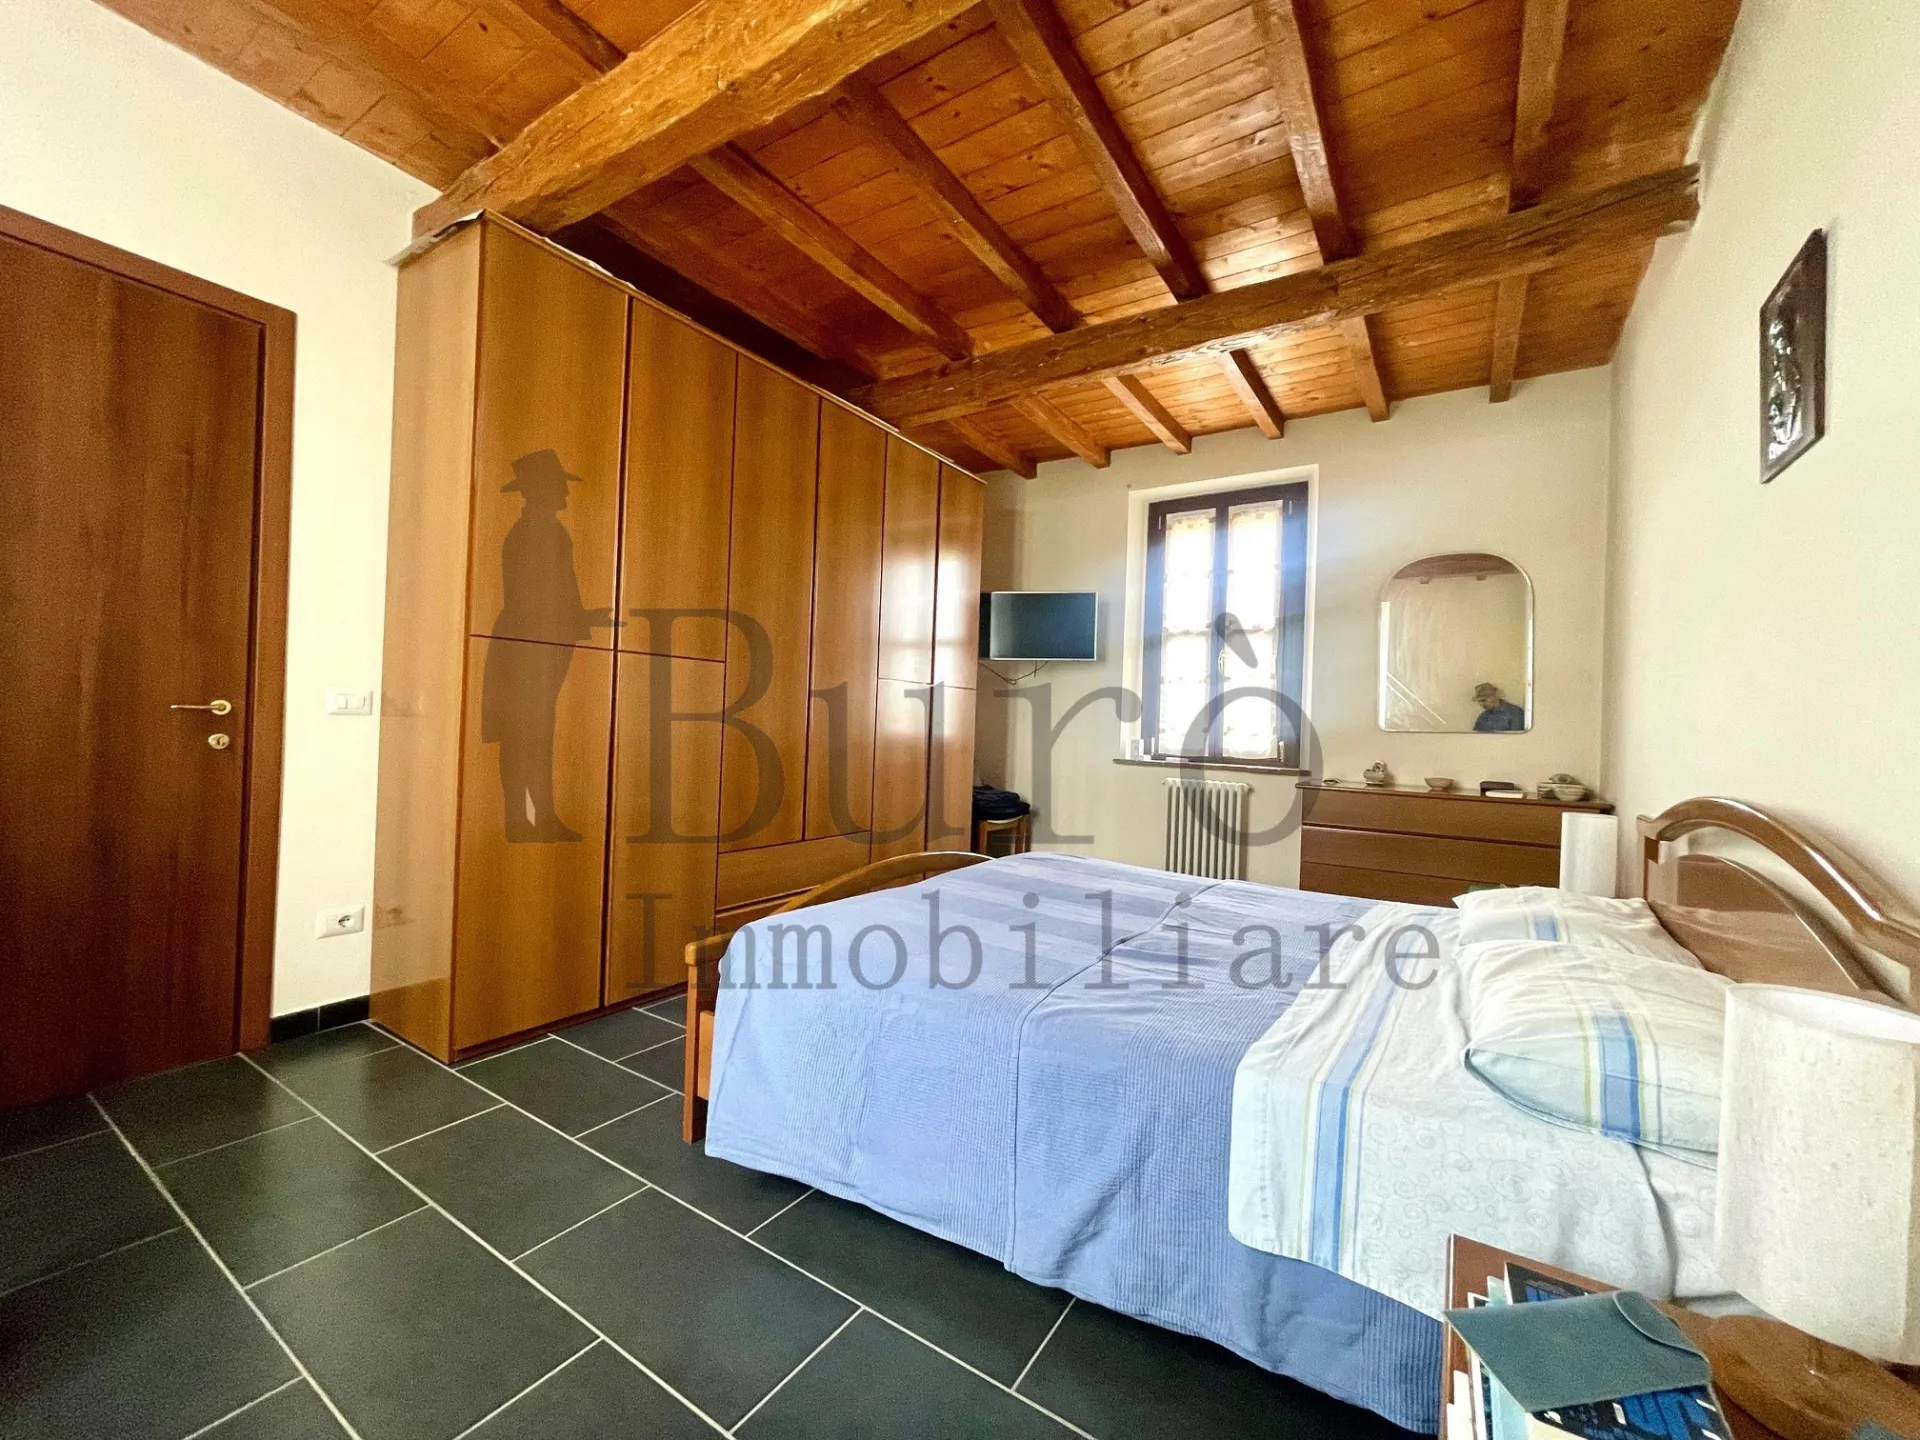 Immagine per Porzione di casa in vendita a Parma strada Val Parma 186